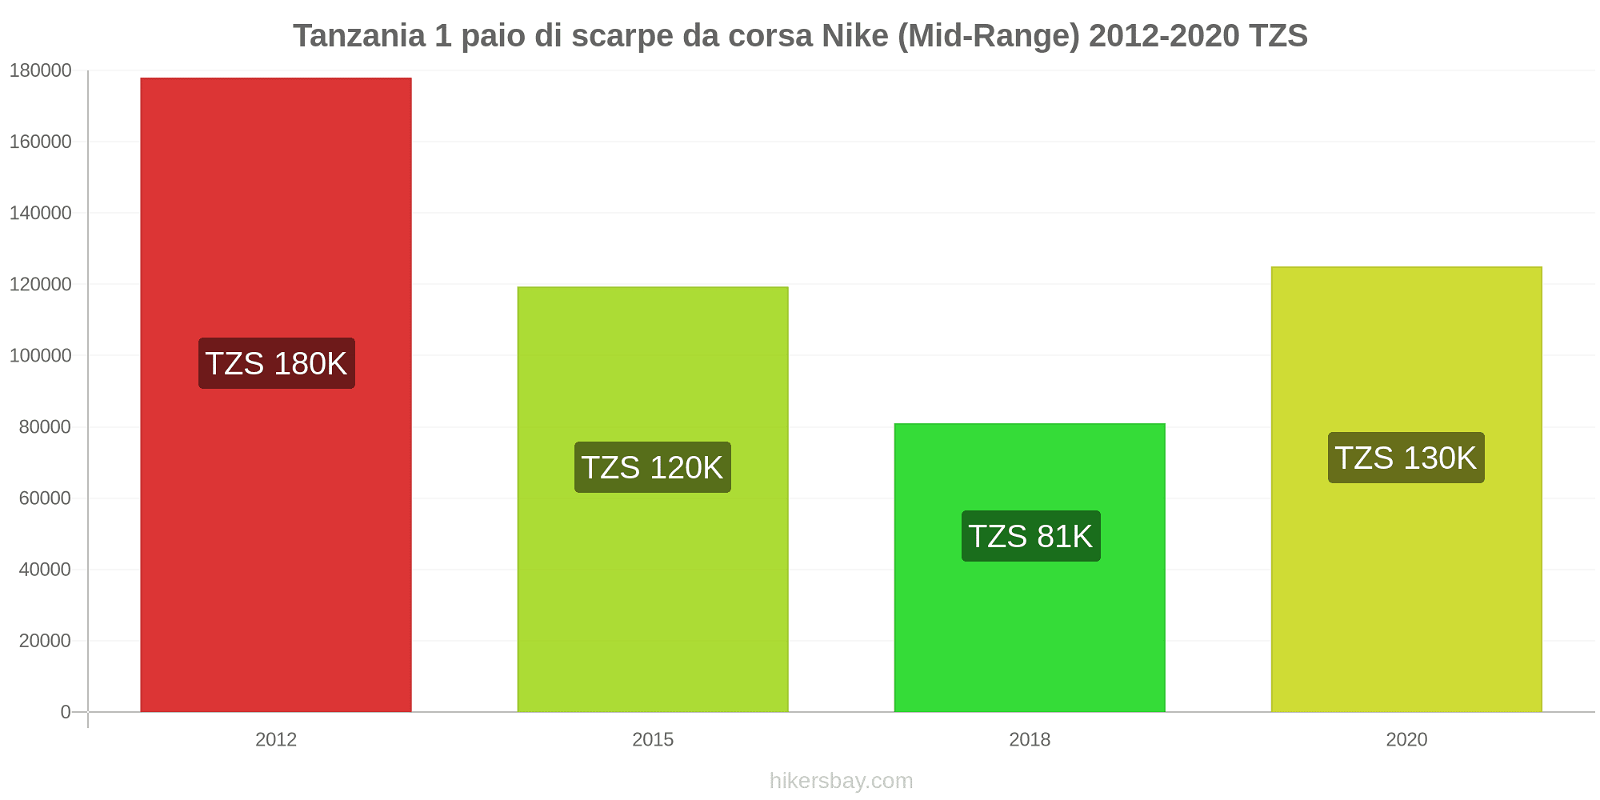 Tanzania variazioni di prezzo 1 paio di scarpe da corsa Nike (simile) hikersbay.com